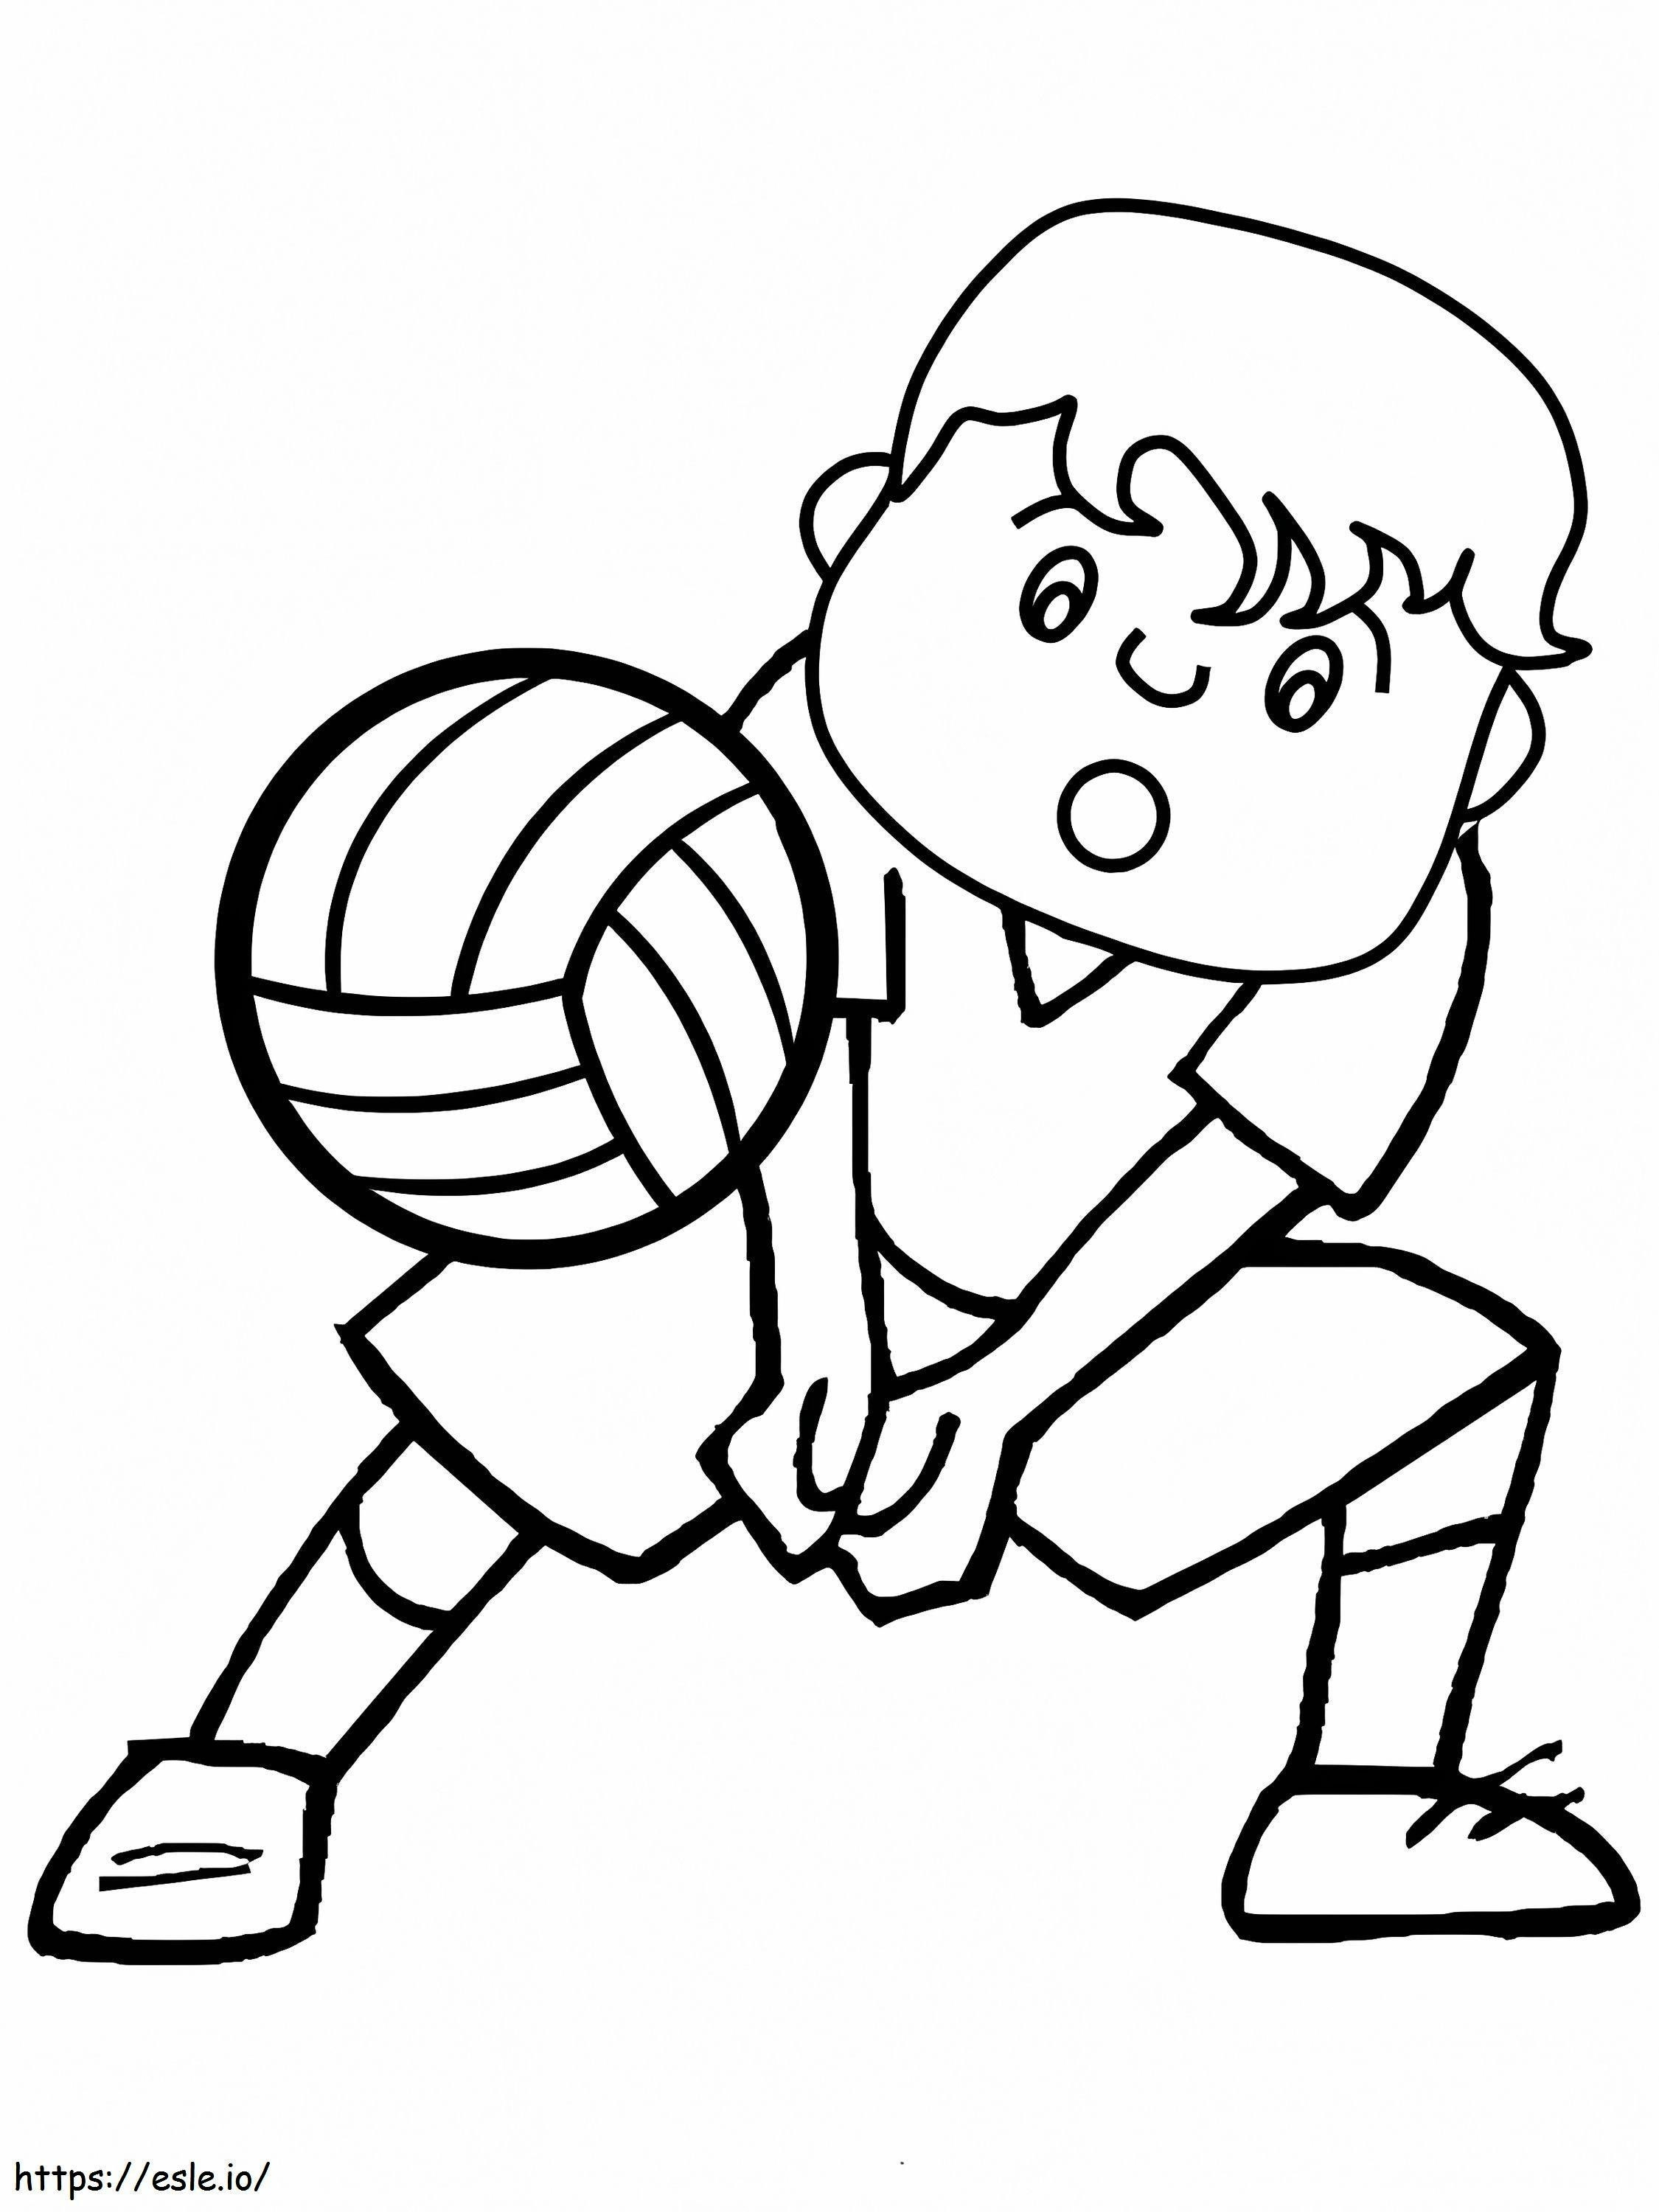 Junge spielt Volleyball ausmalbilder